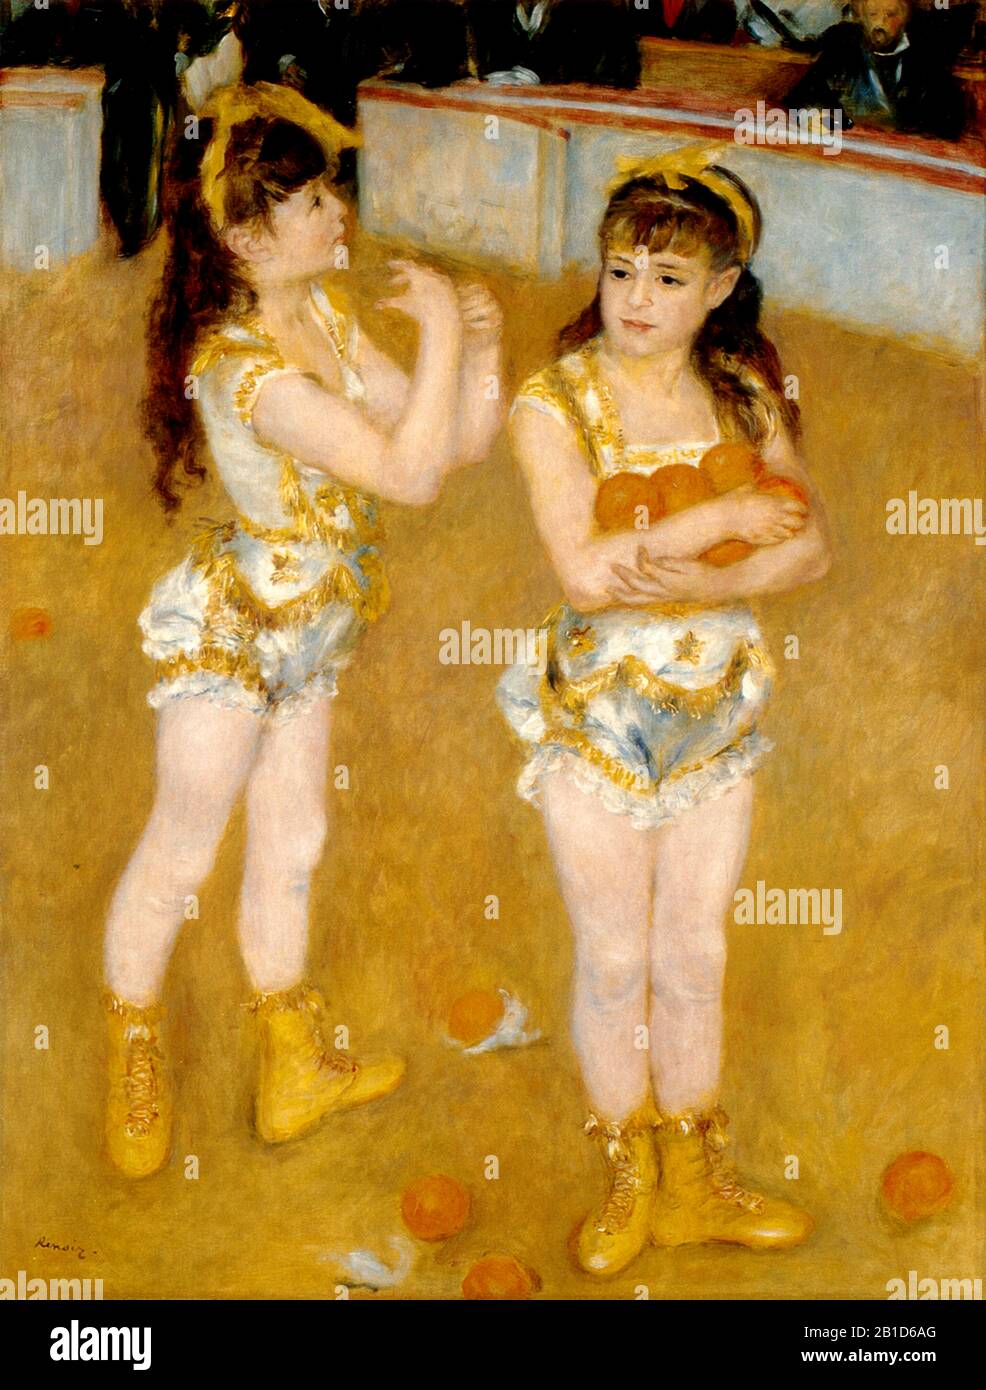 Acrobati al Cirque Fernando (1879) - Pittura del 19th Secolo di Pierre-Auguste Renoir - immagine Ad Altissima risoluzione e qualità Foto Stock